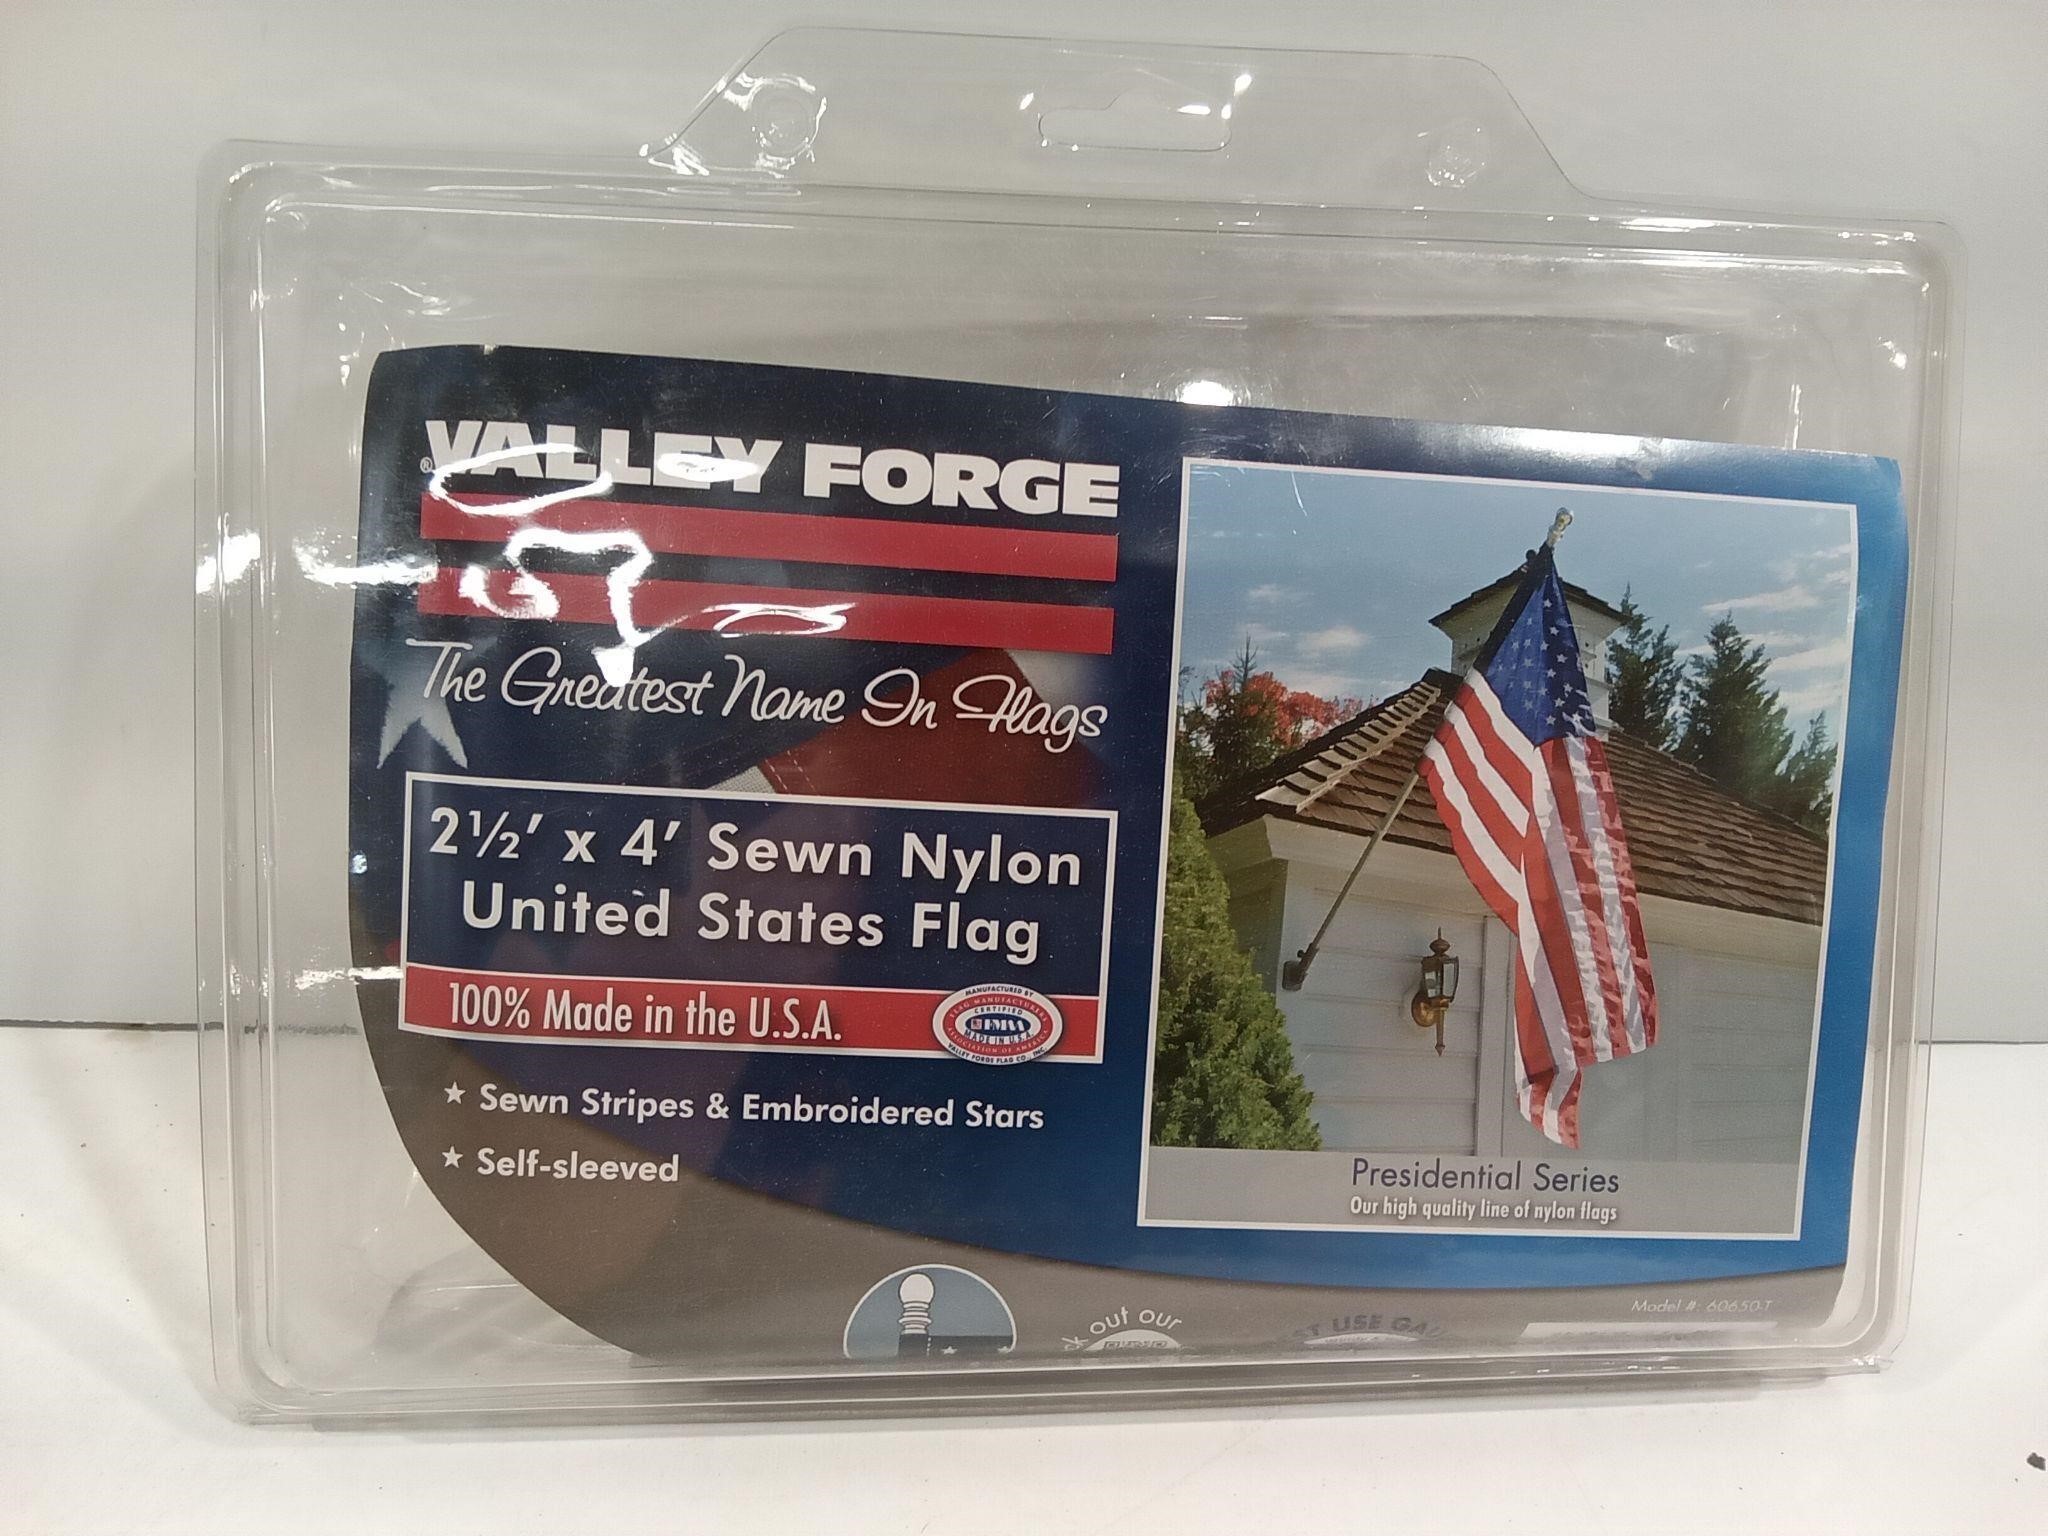 Valley Forge 2-1/2' x 4' Sewn Nylon US Flag